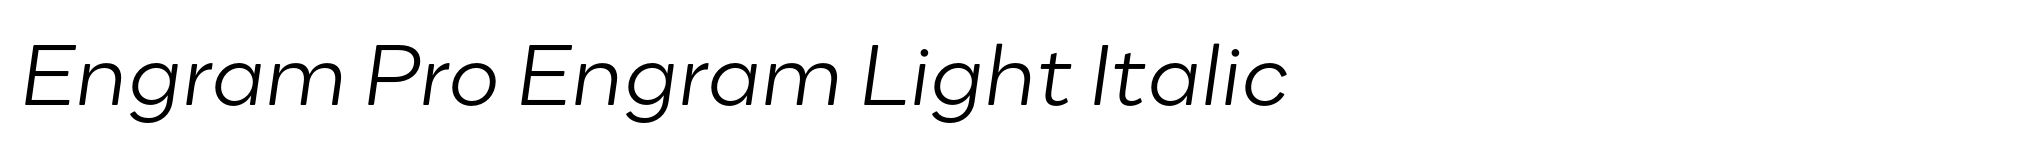 Engram Pro Engram Light Italic image